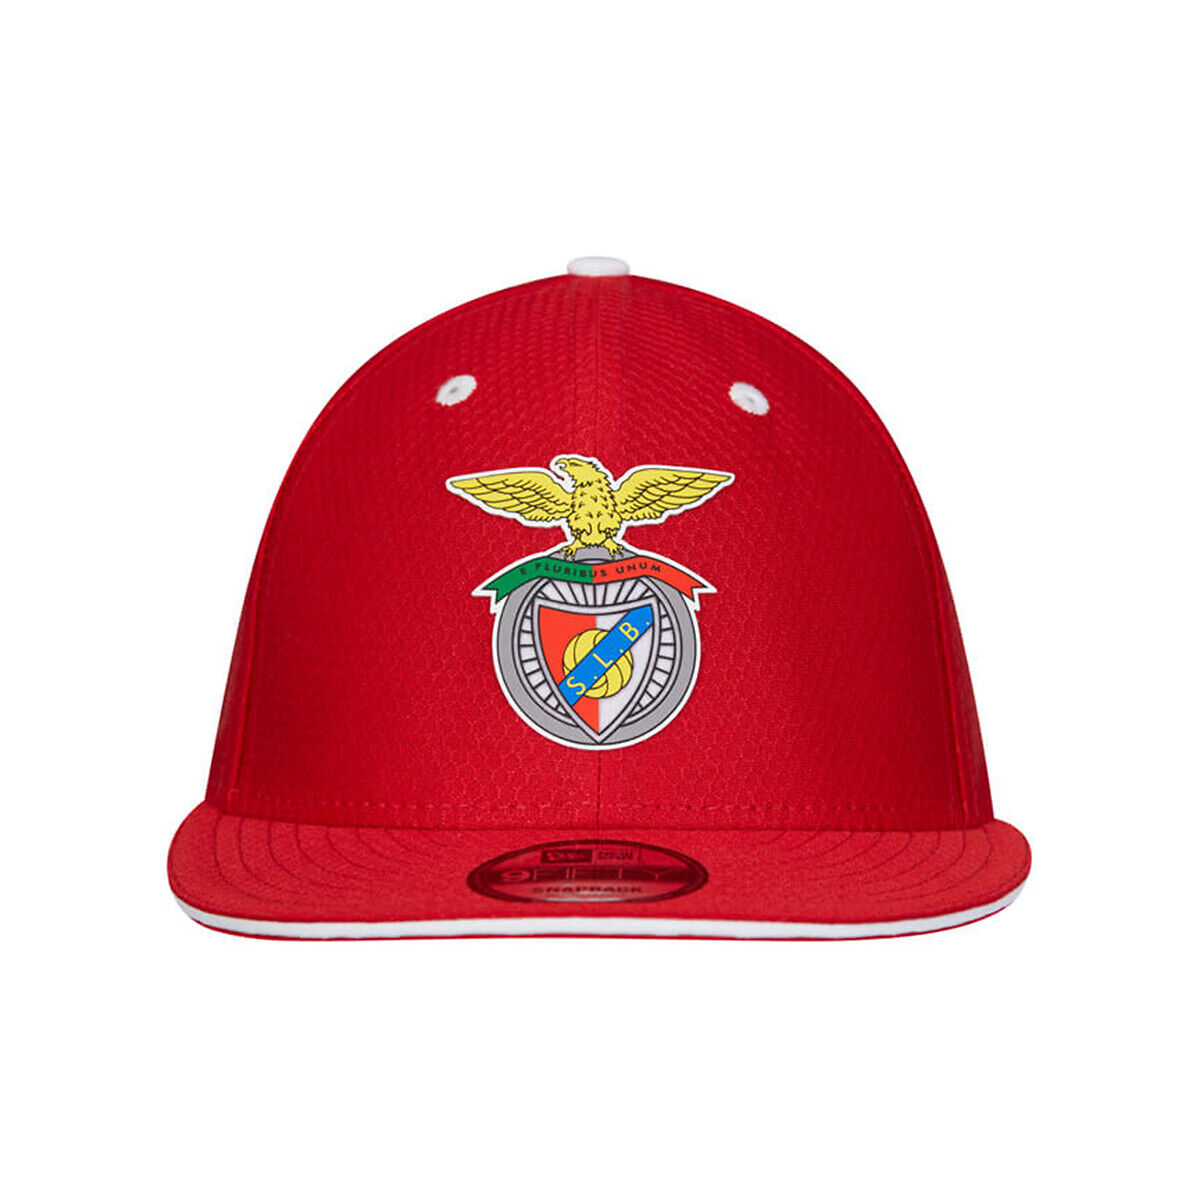 Sl Benfica Boné vermelho com logo Benfica   Vermelho